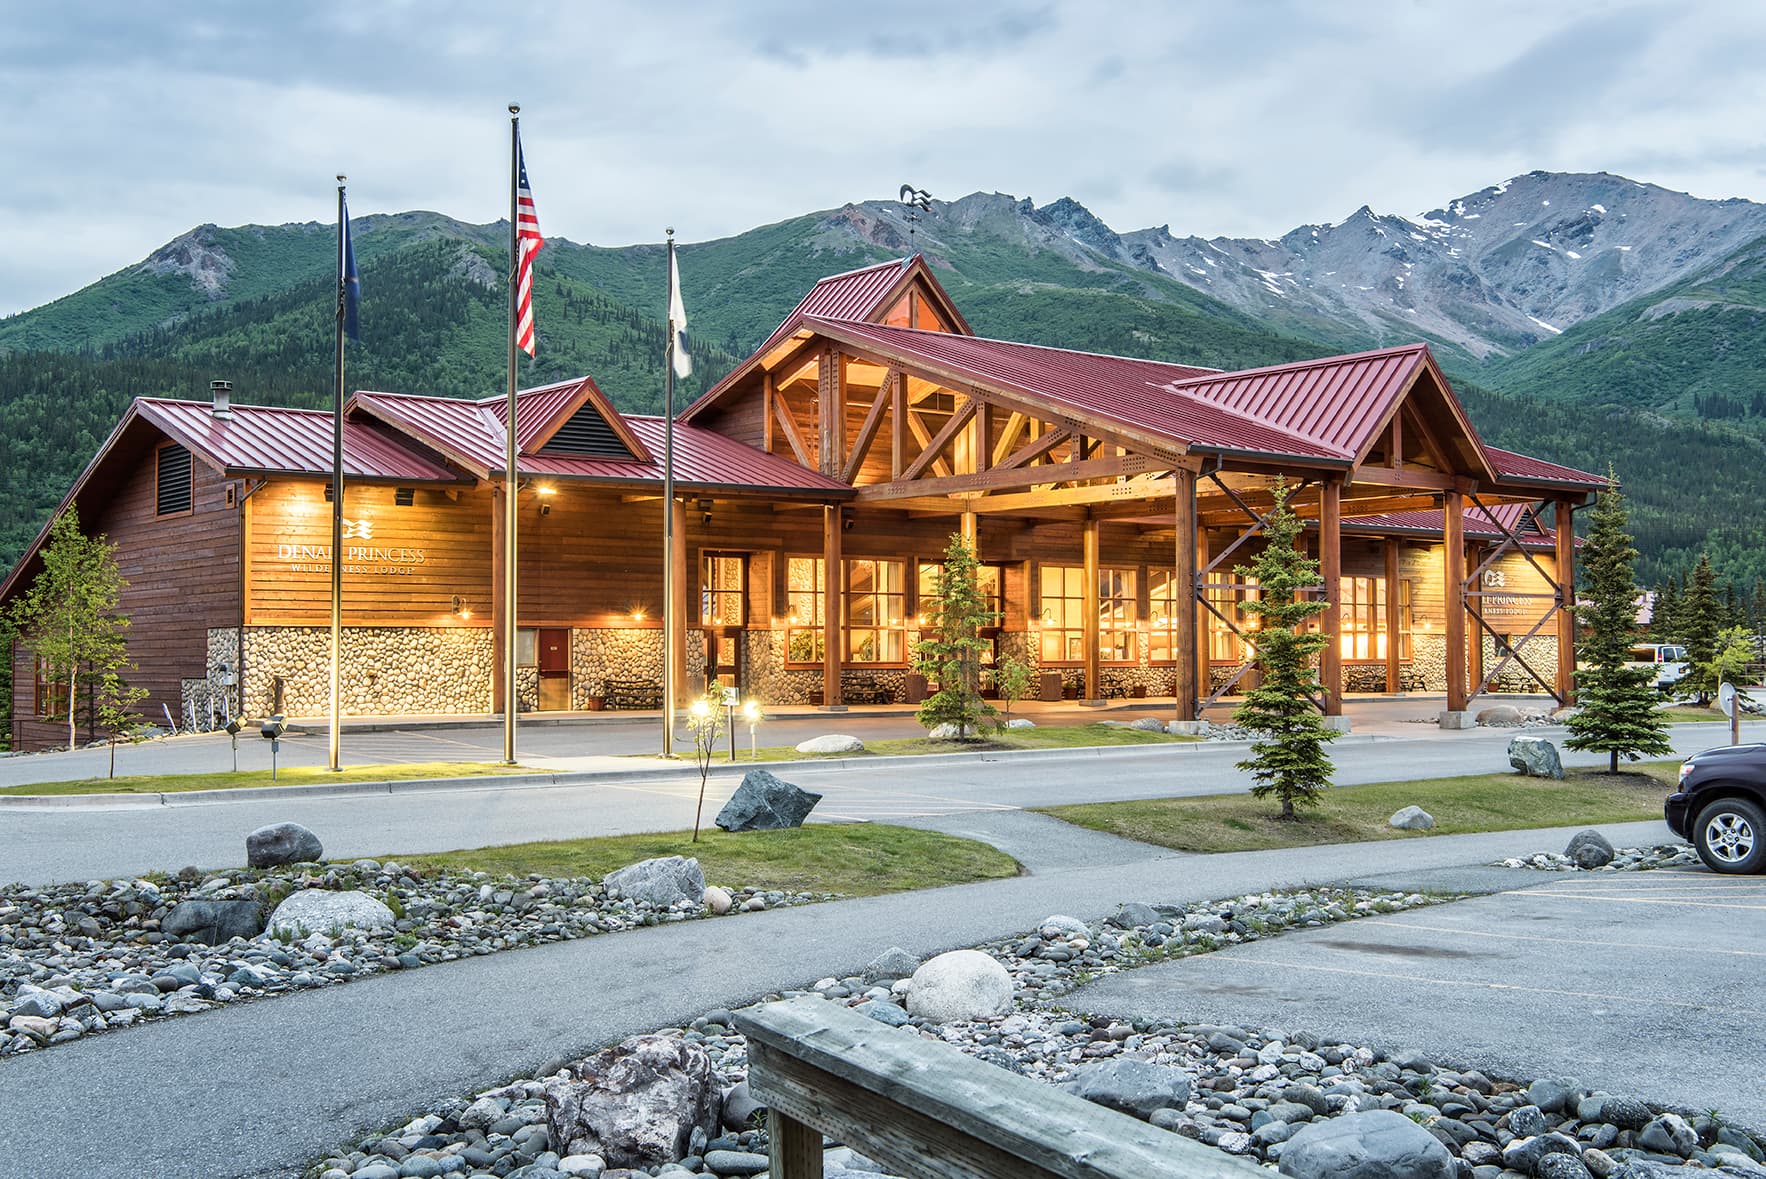 DENALI BACKCOUNTRY LODGE - Hotel Reviews (Denali National Park and